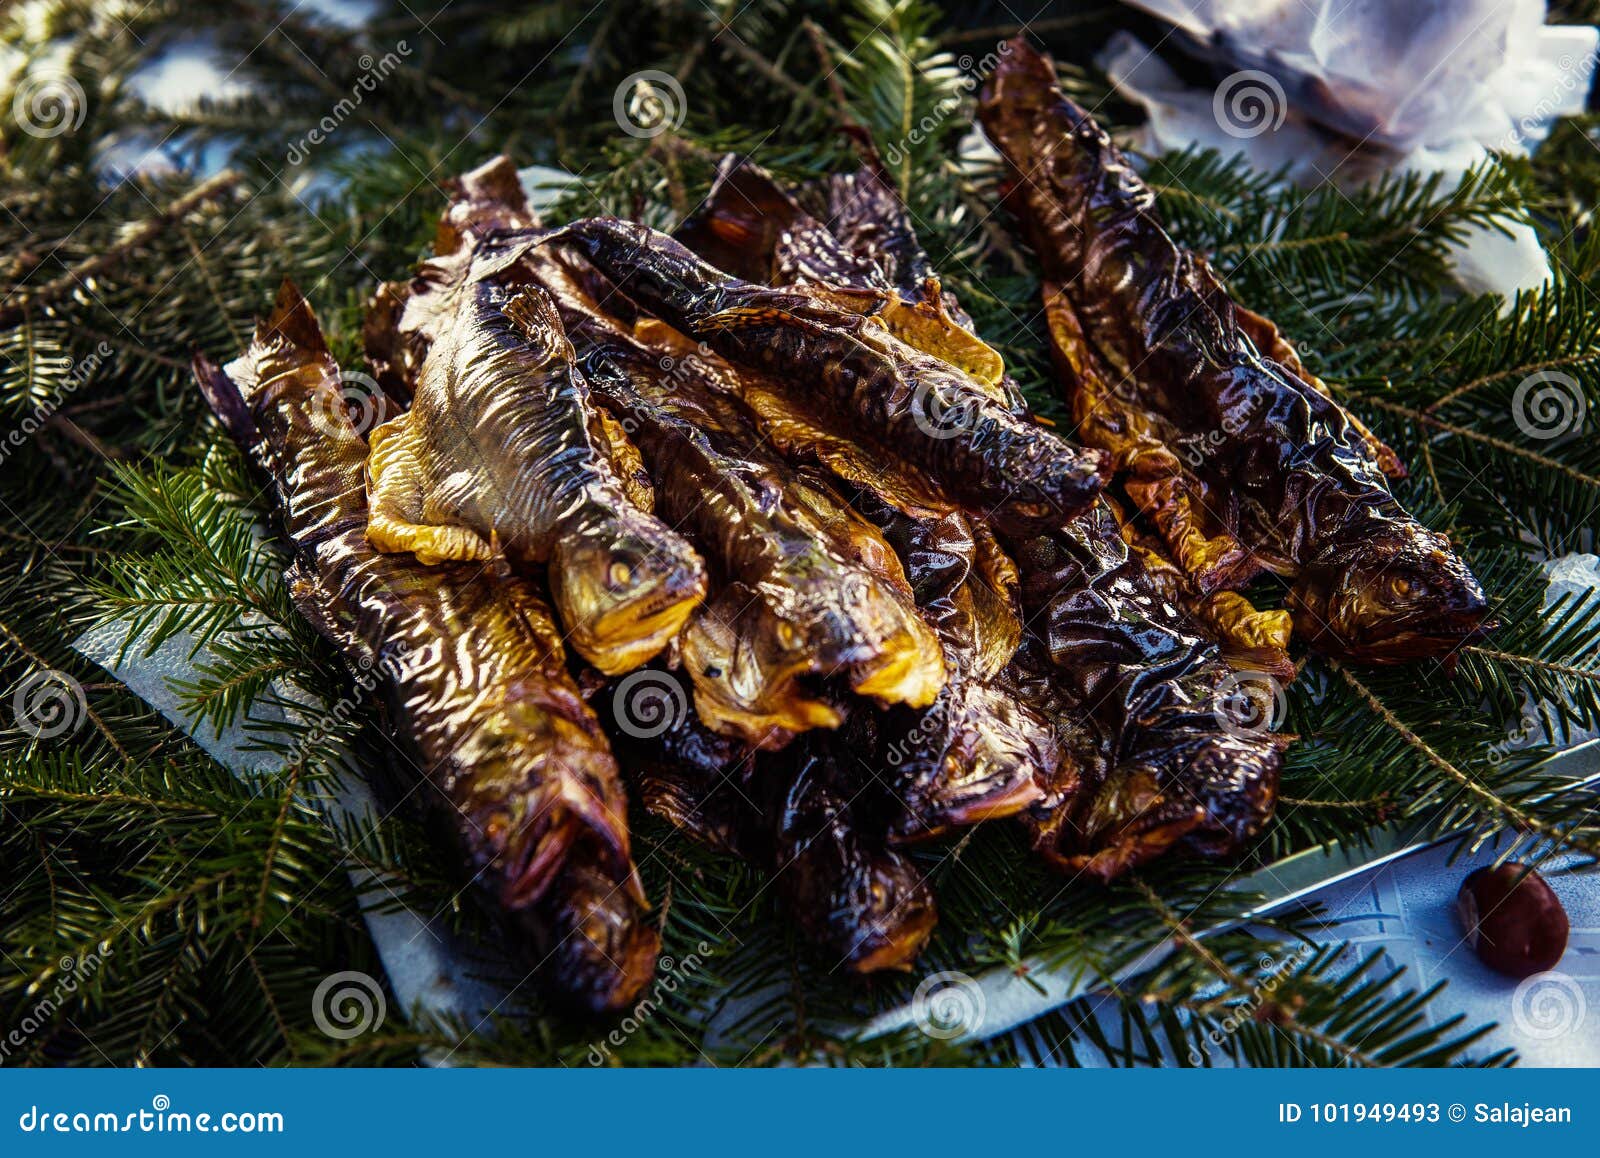 Хвойная рыба. Копчёная форель в Армении. Блюдо рыба в ветках сосны. Рыба в ветках сосны. Уши форели копченые.